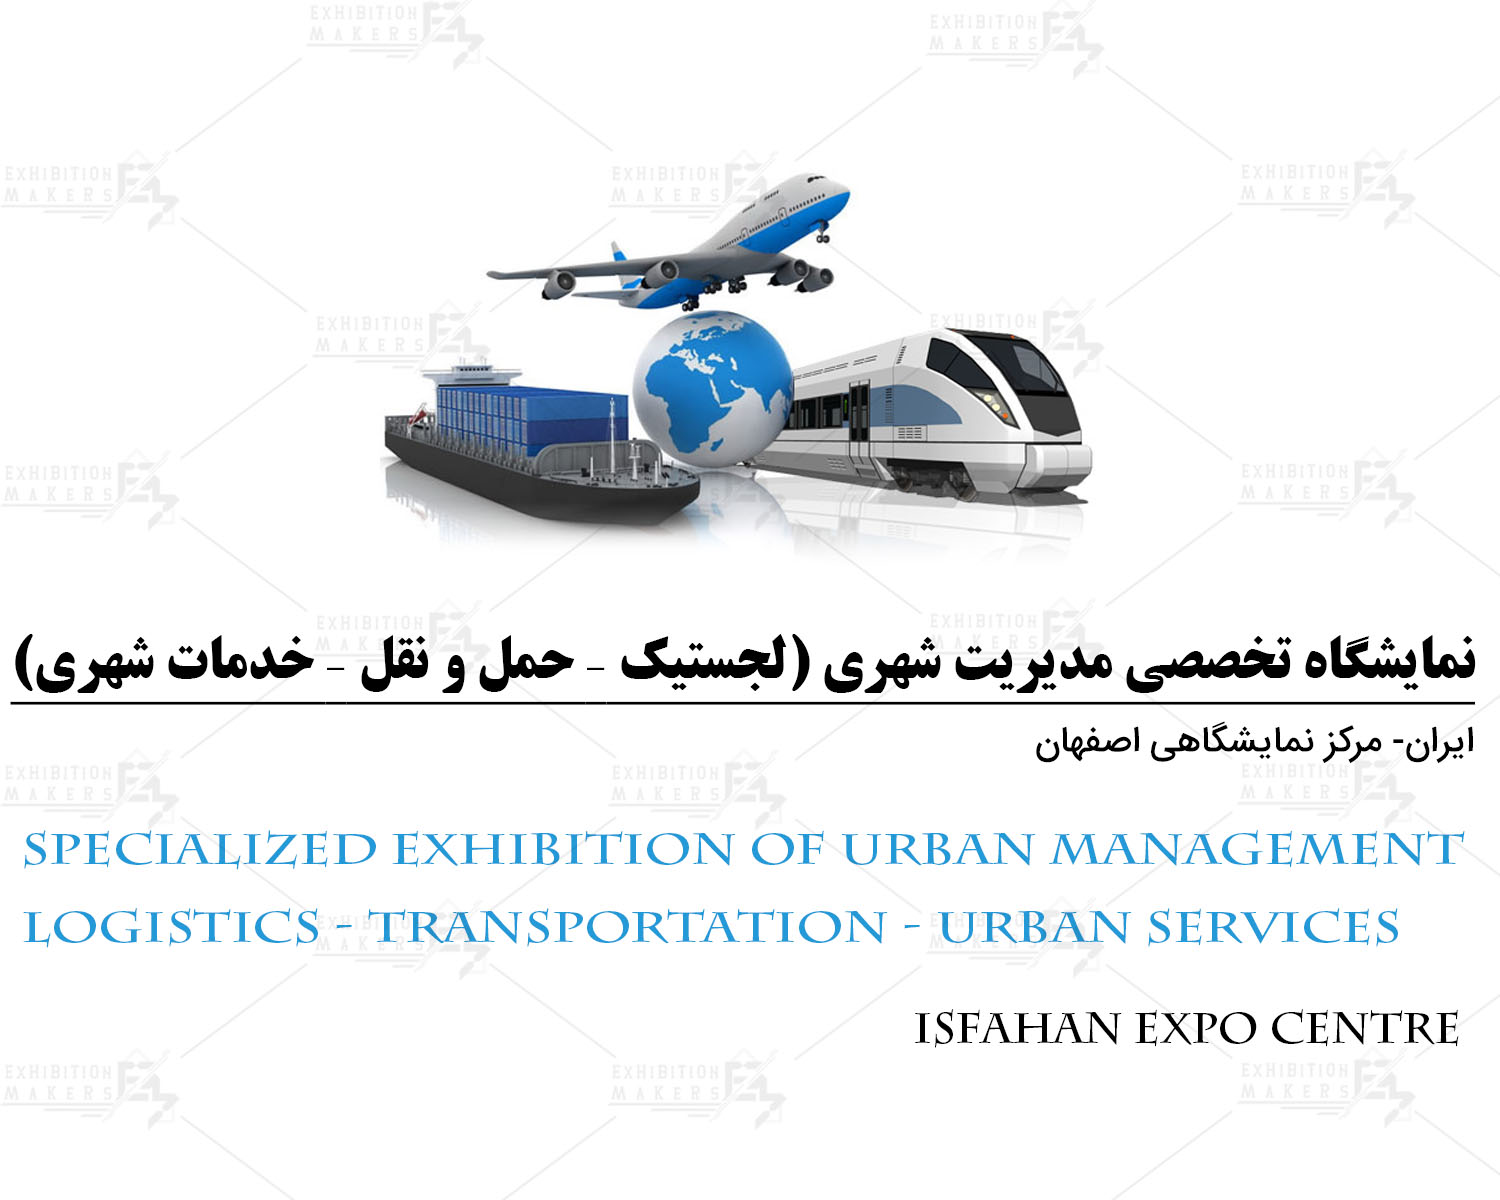 نمایشگاه تخصصی مدیریت شهری (لجستیک – حمل و نقل – خدمات شهری ) اصفهان